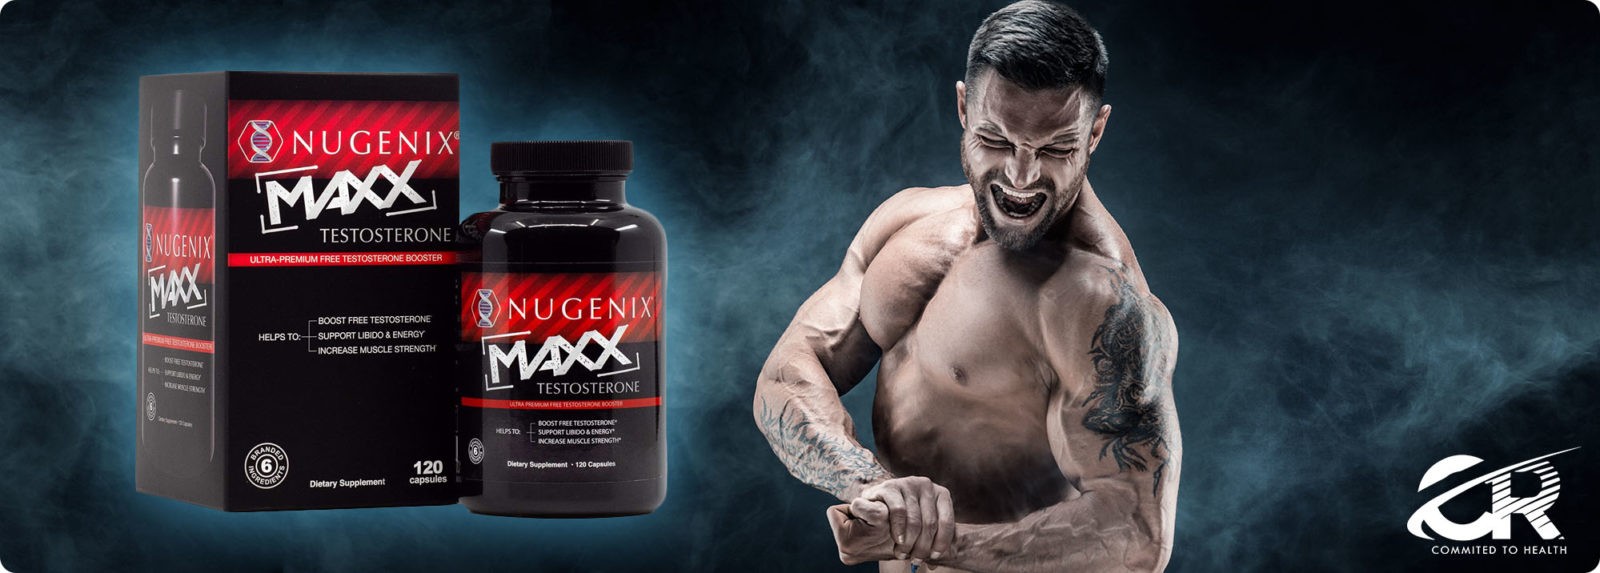 Is Nugenix Maxx Legal steroid?